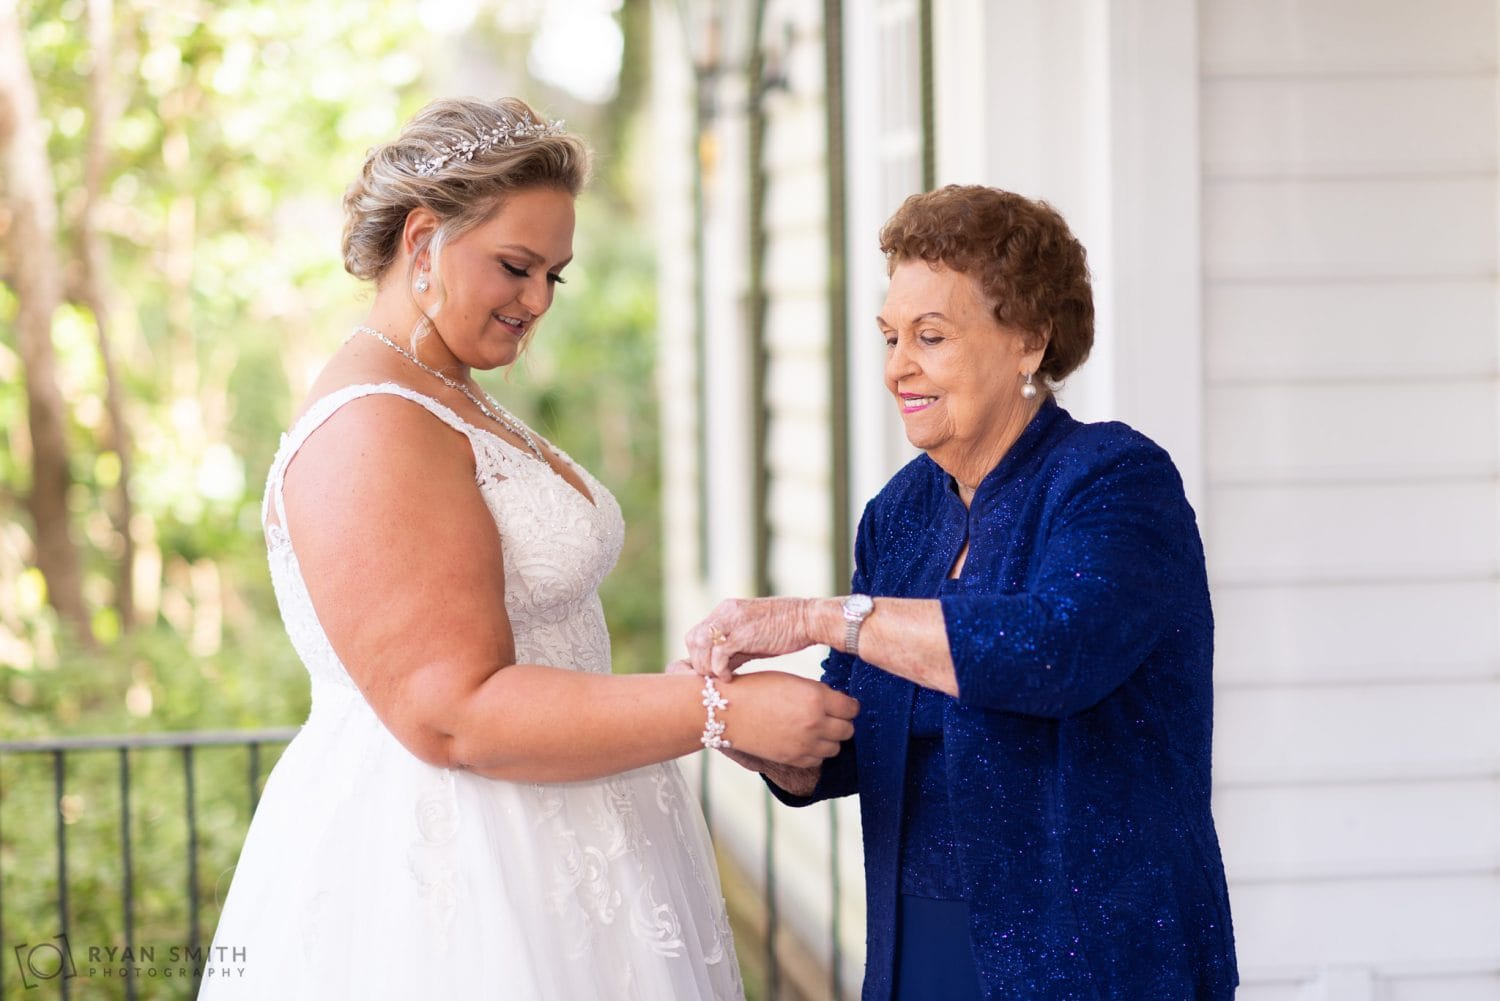 Grandmother helping bride put on her bracelet